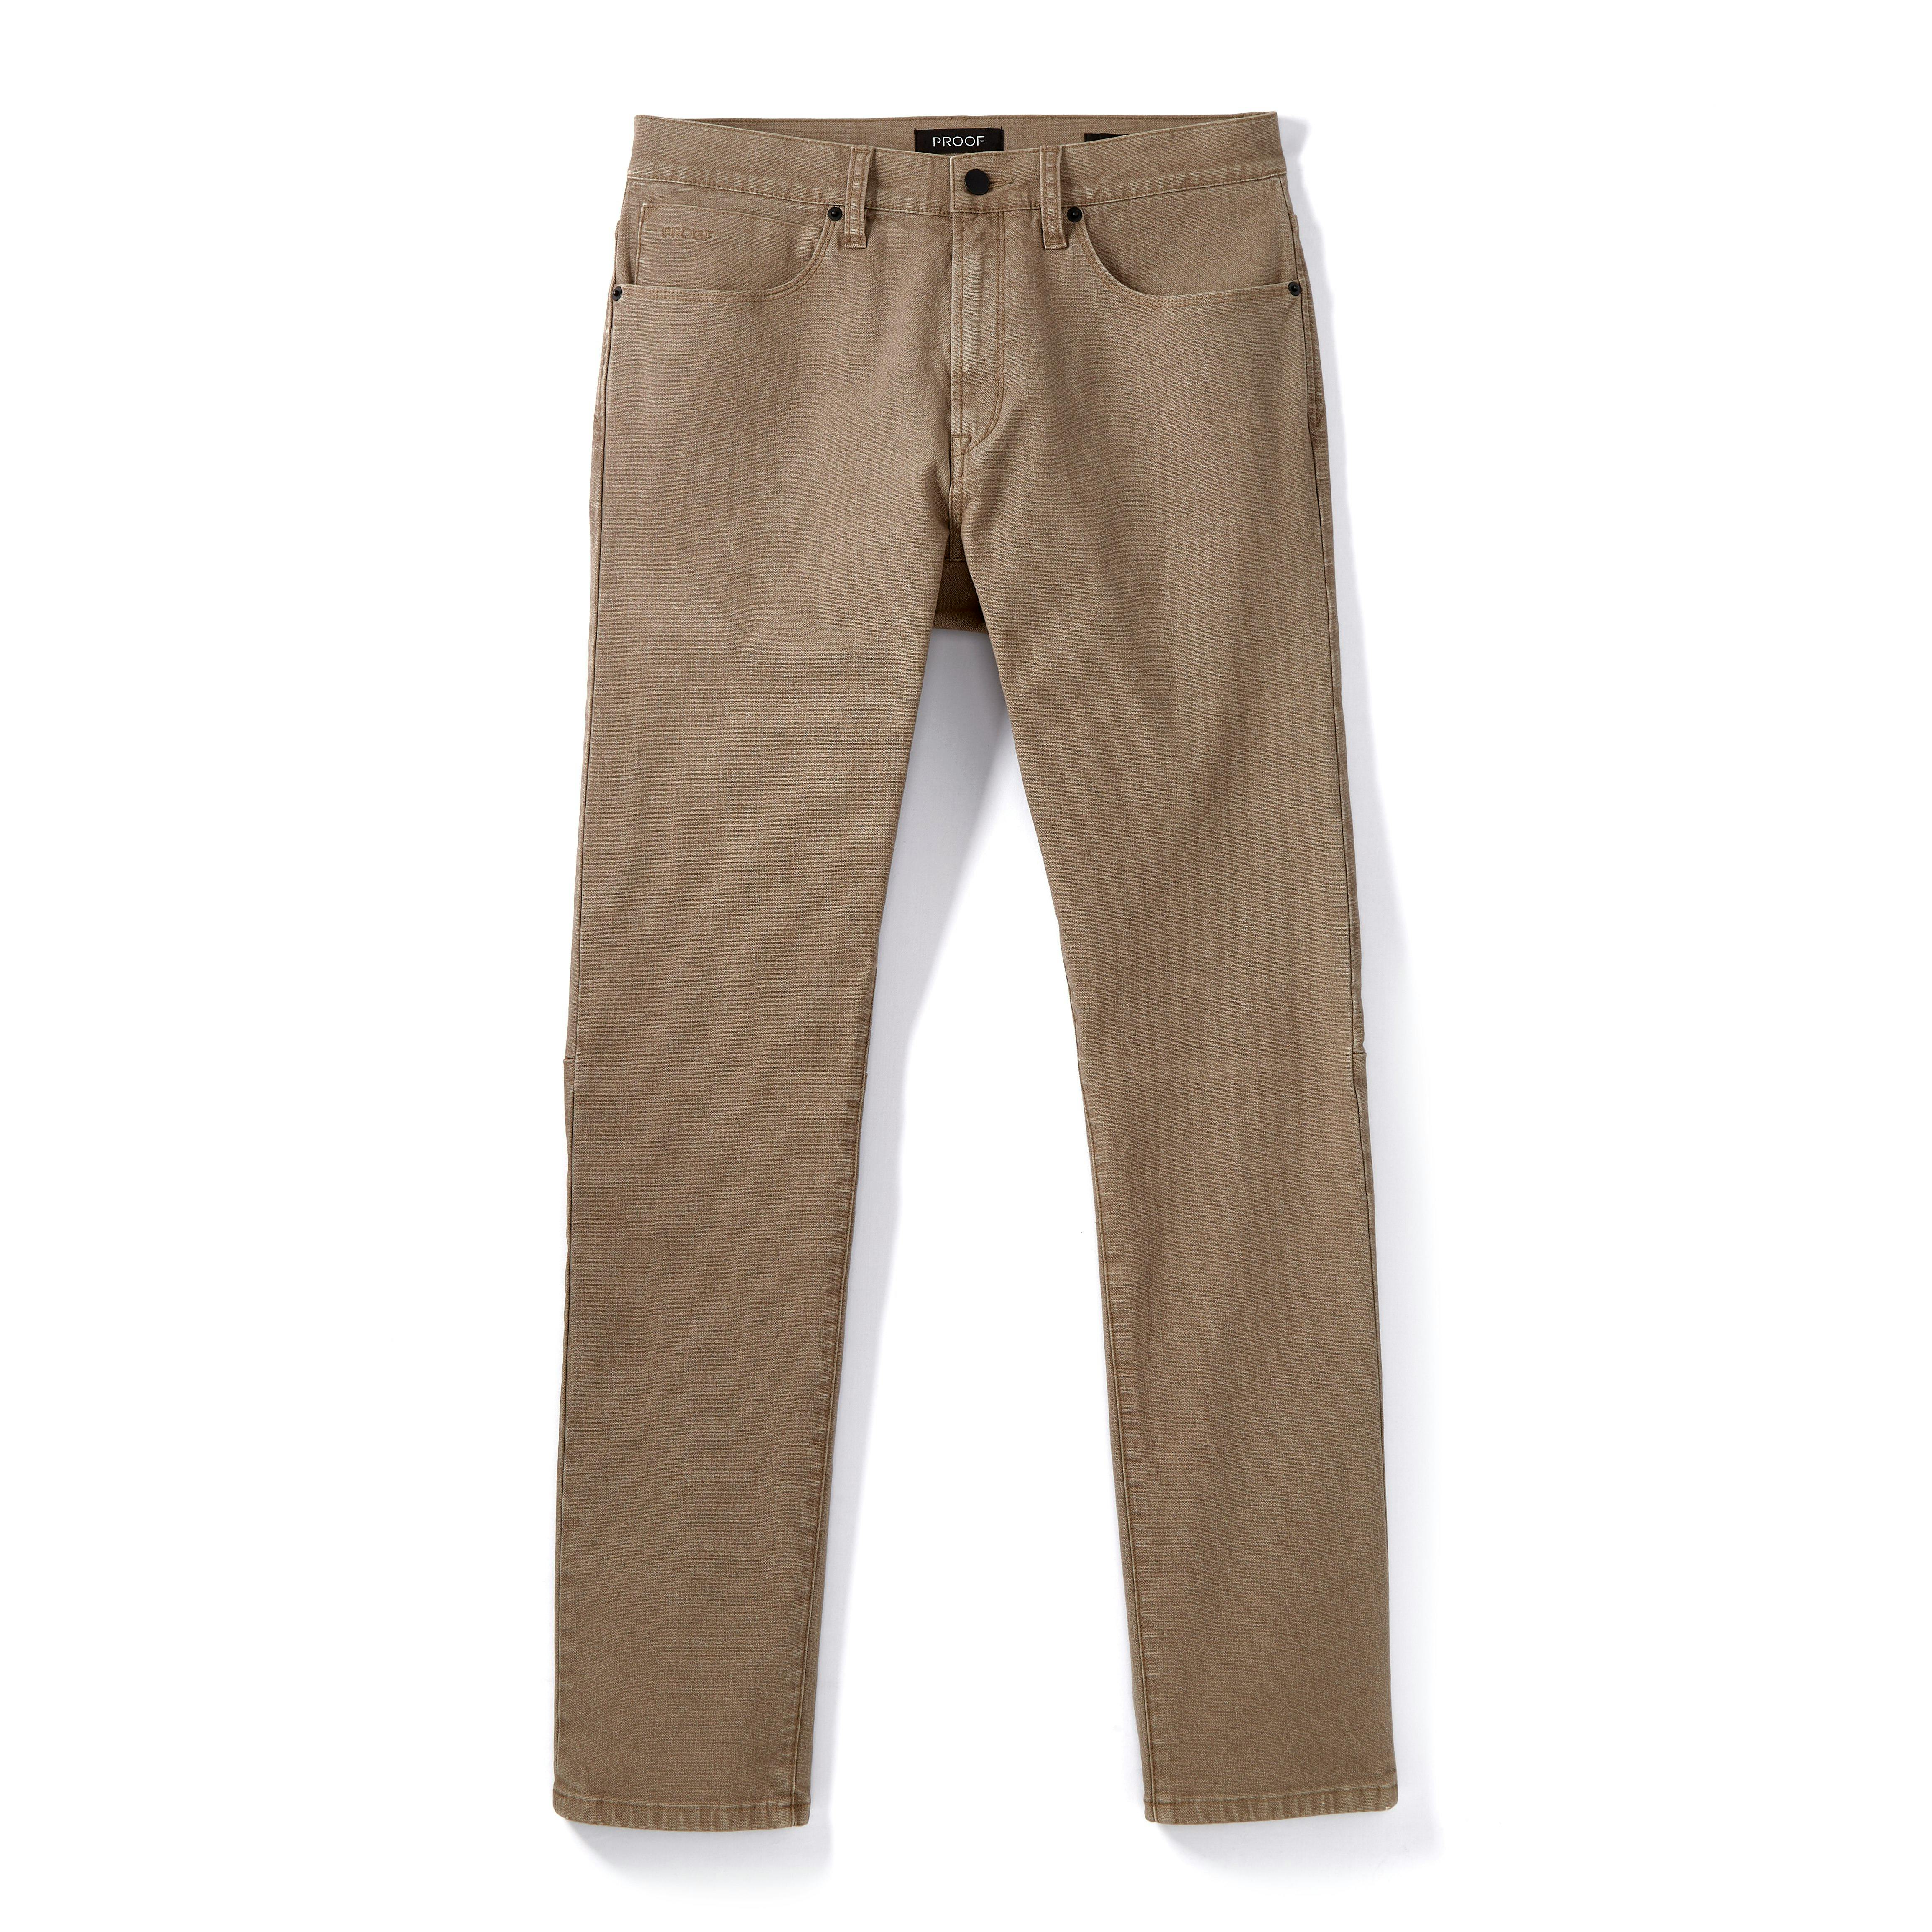 Proof Rover Pant - Slim - Dark Bronze Grey, Casual Pants